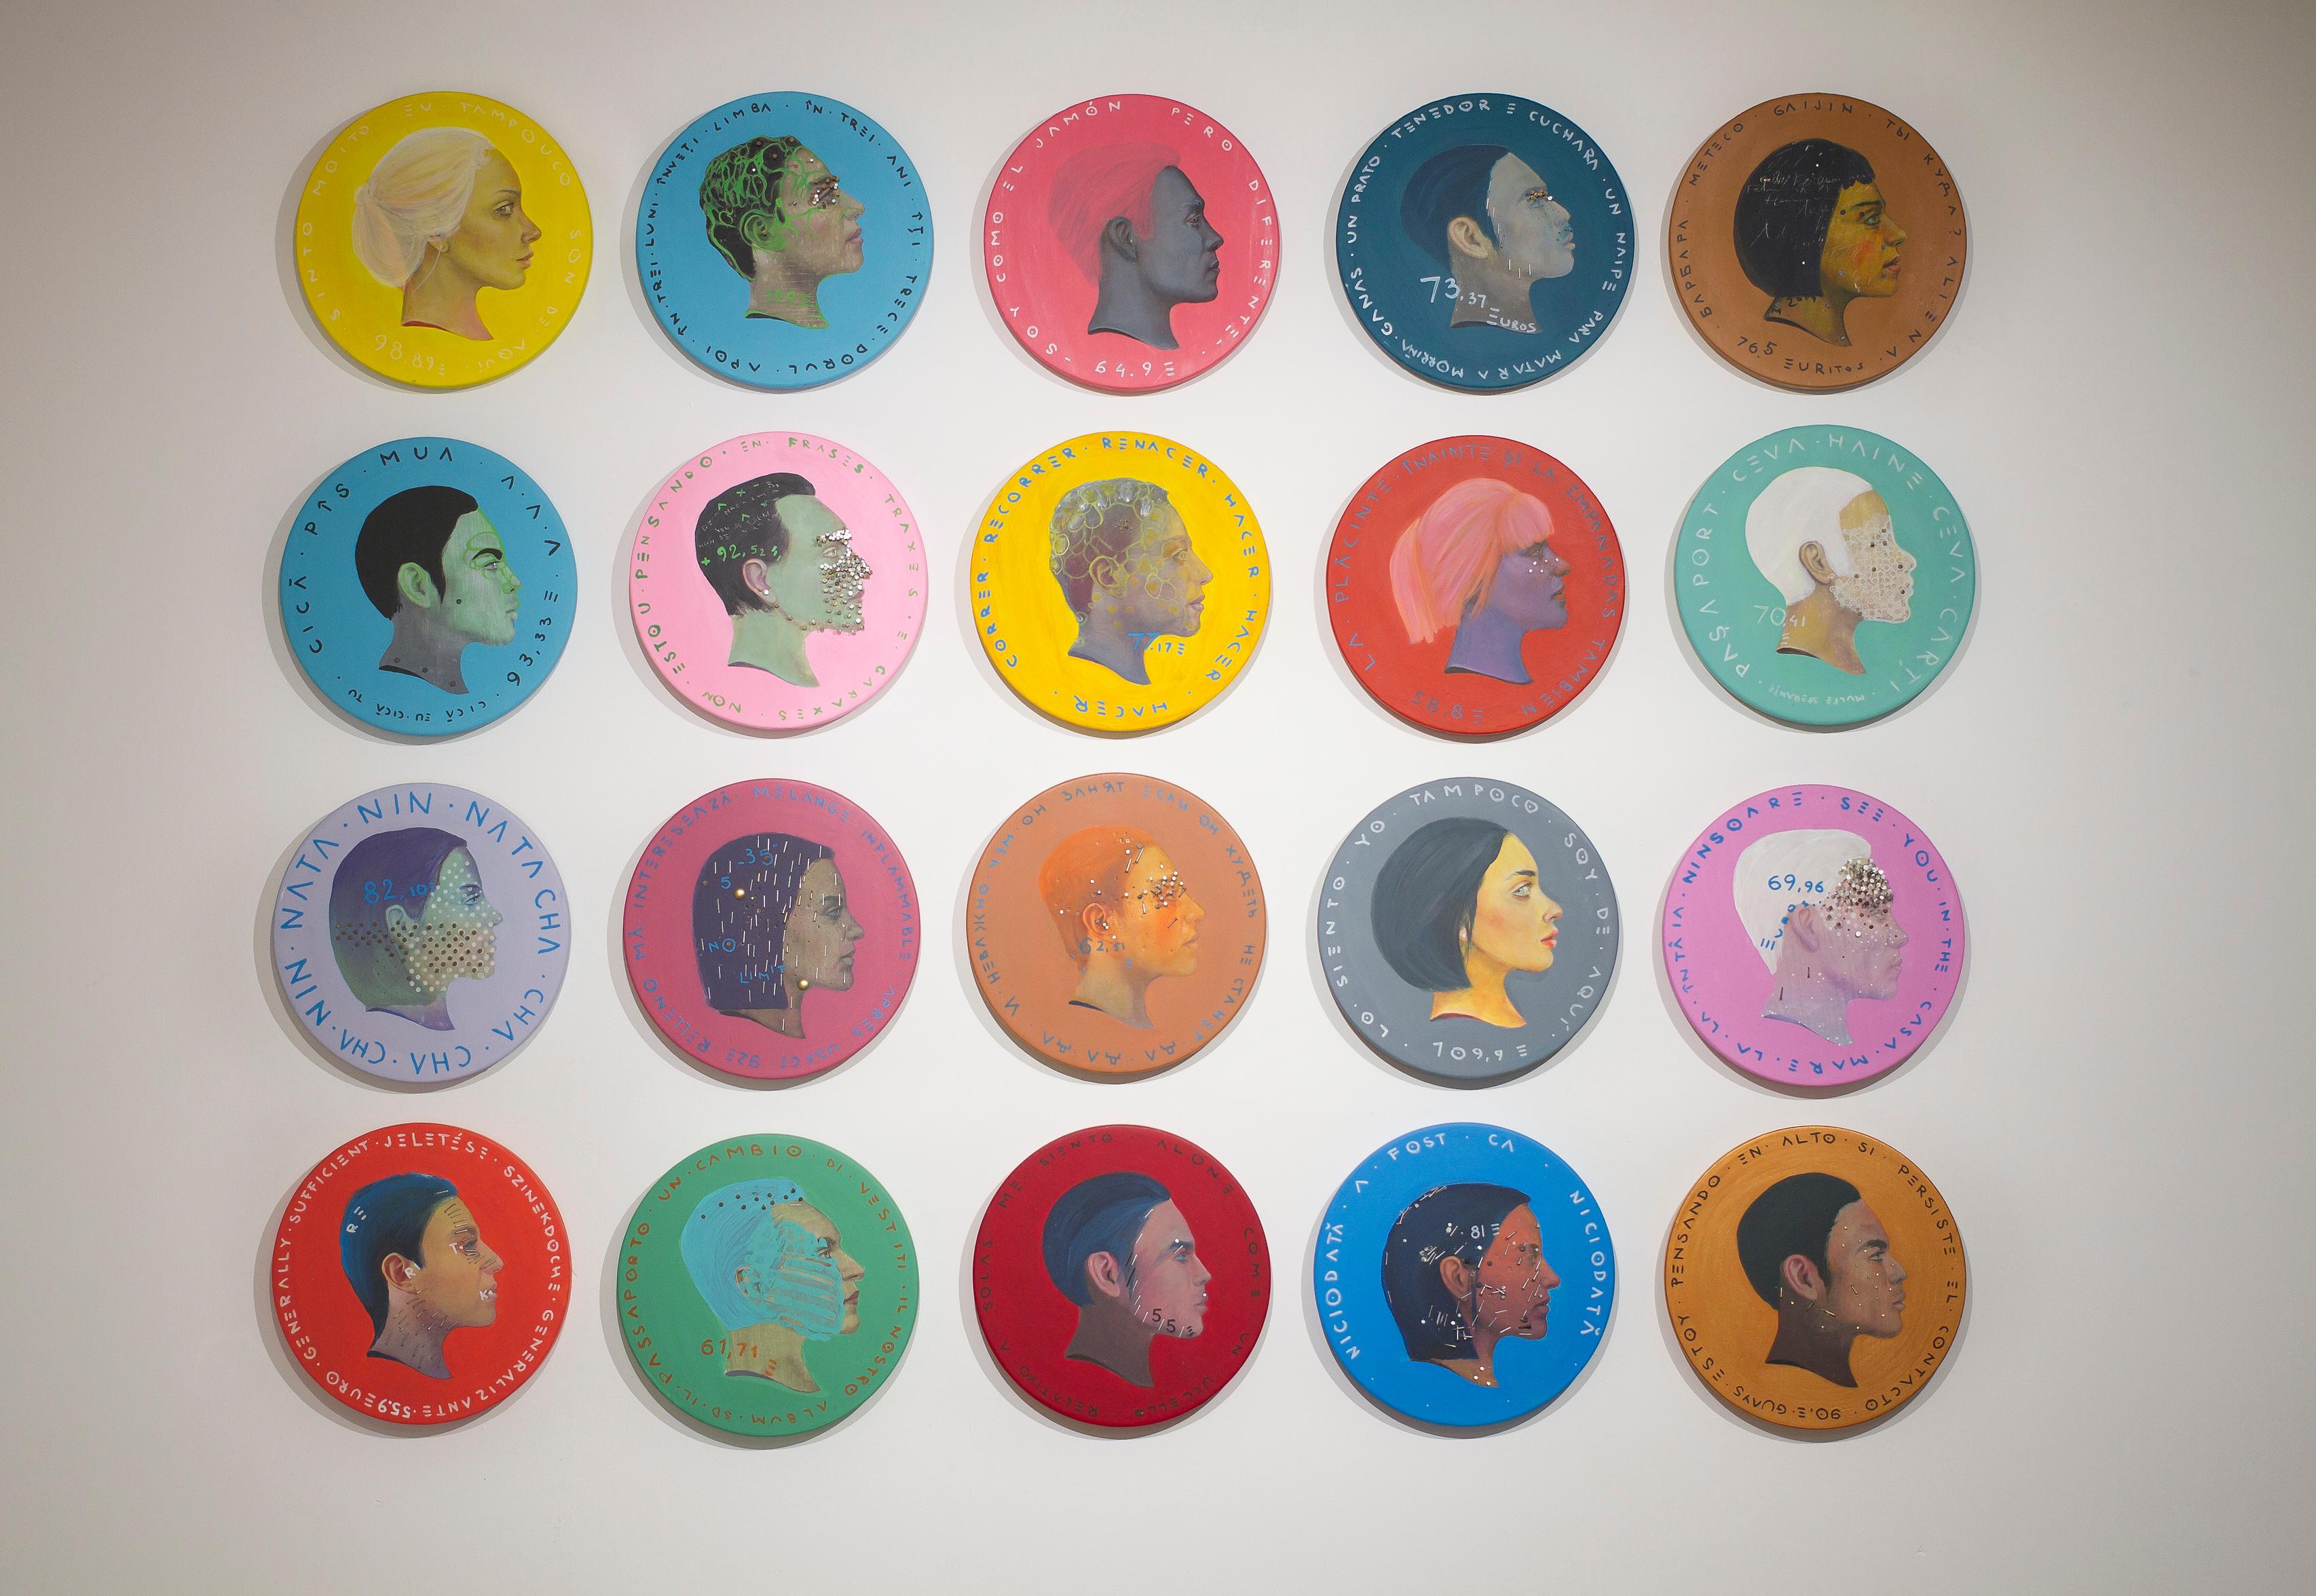  Pop Surrealist Face Coin Profile Portrait On Wood. Black Woman 